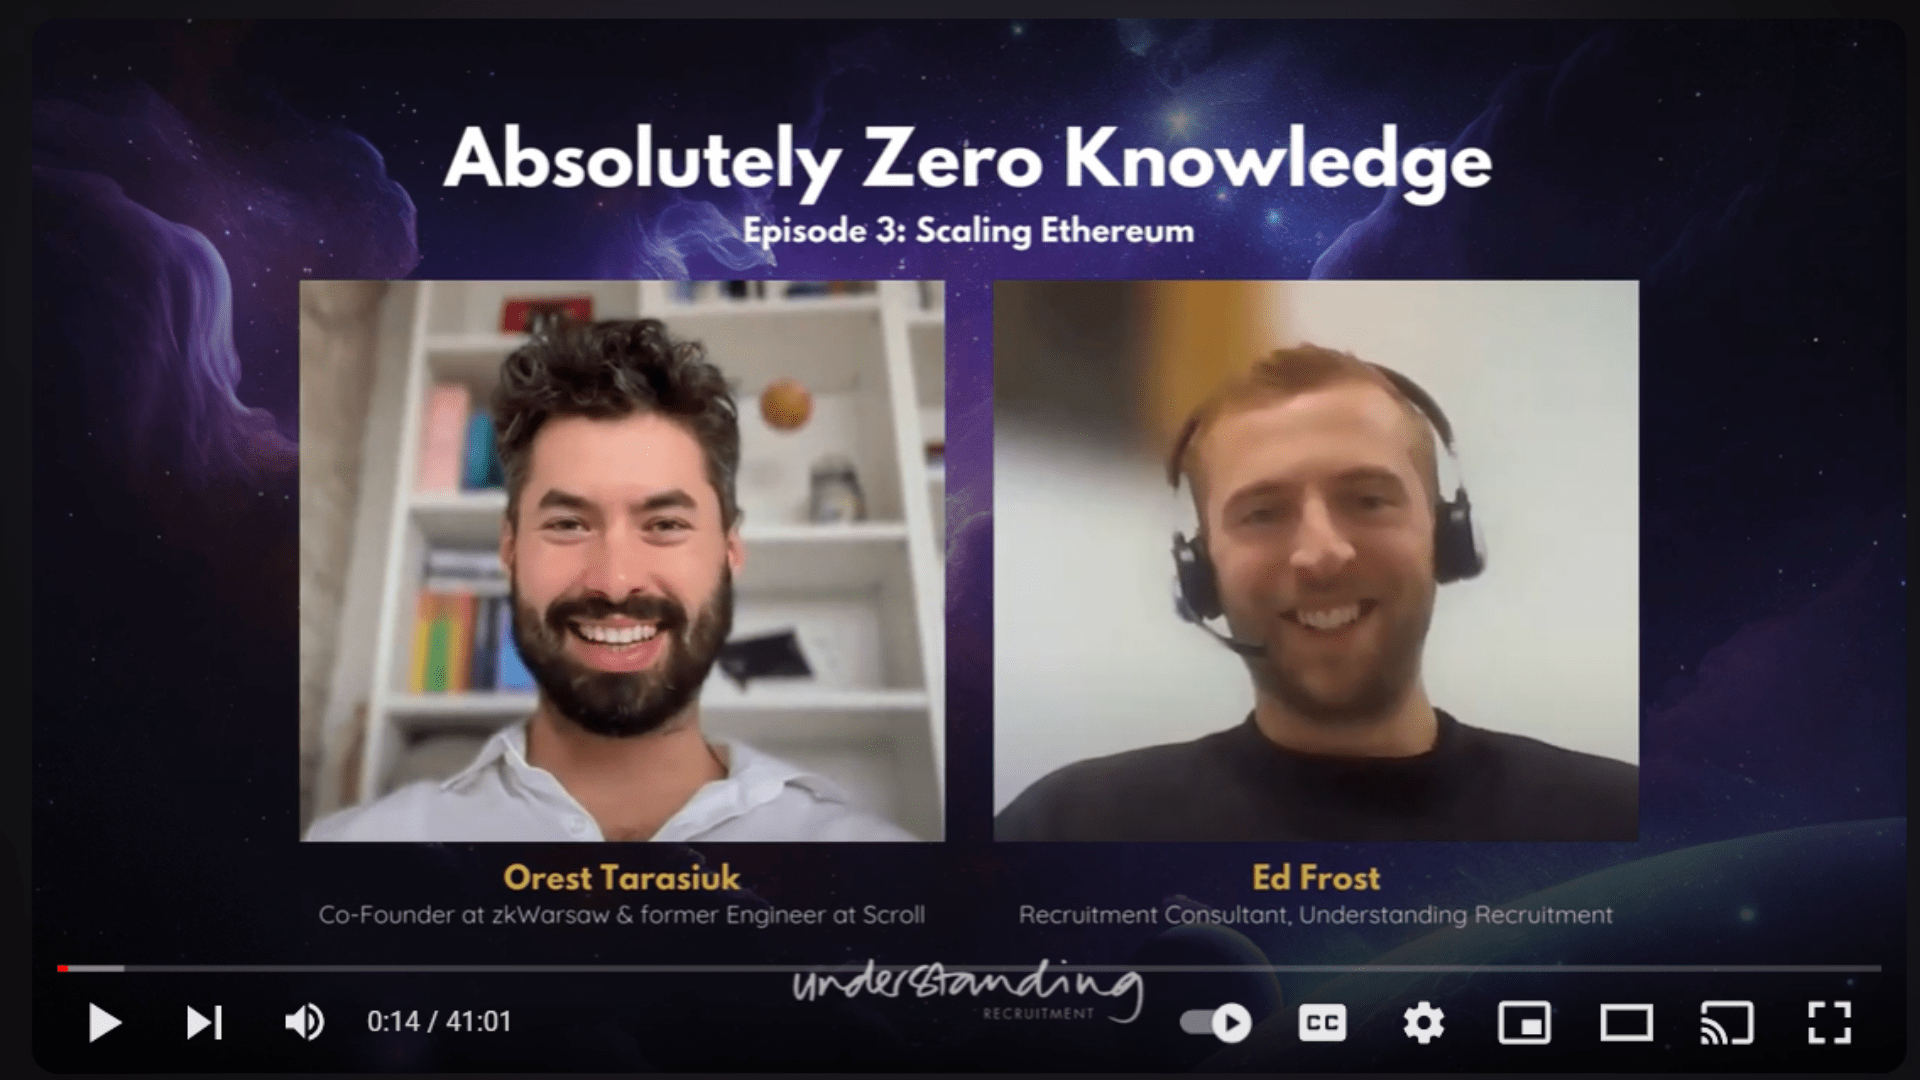 Absolutely Zero Knowledge Episode 3: Orest Tarasiuk